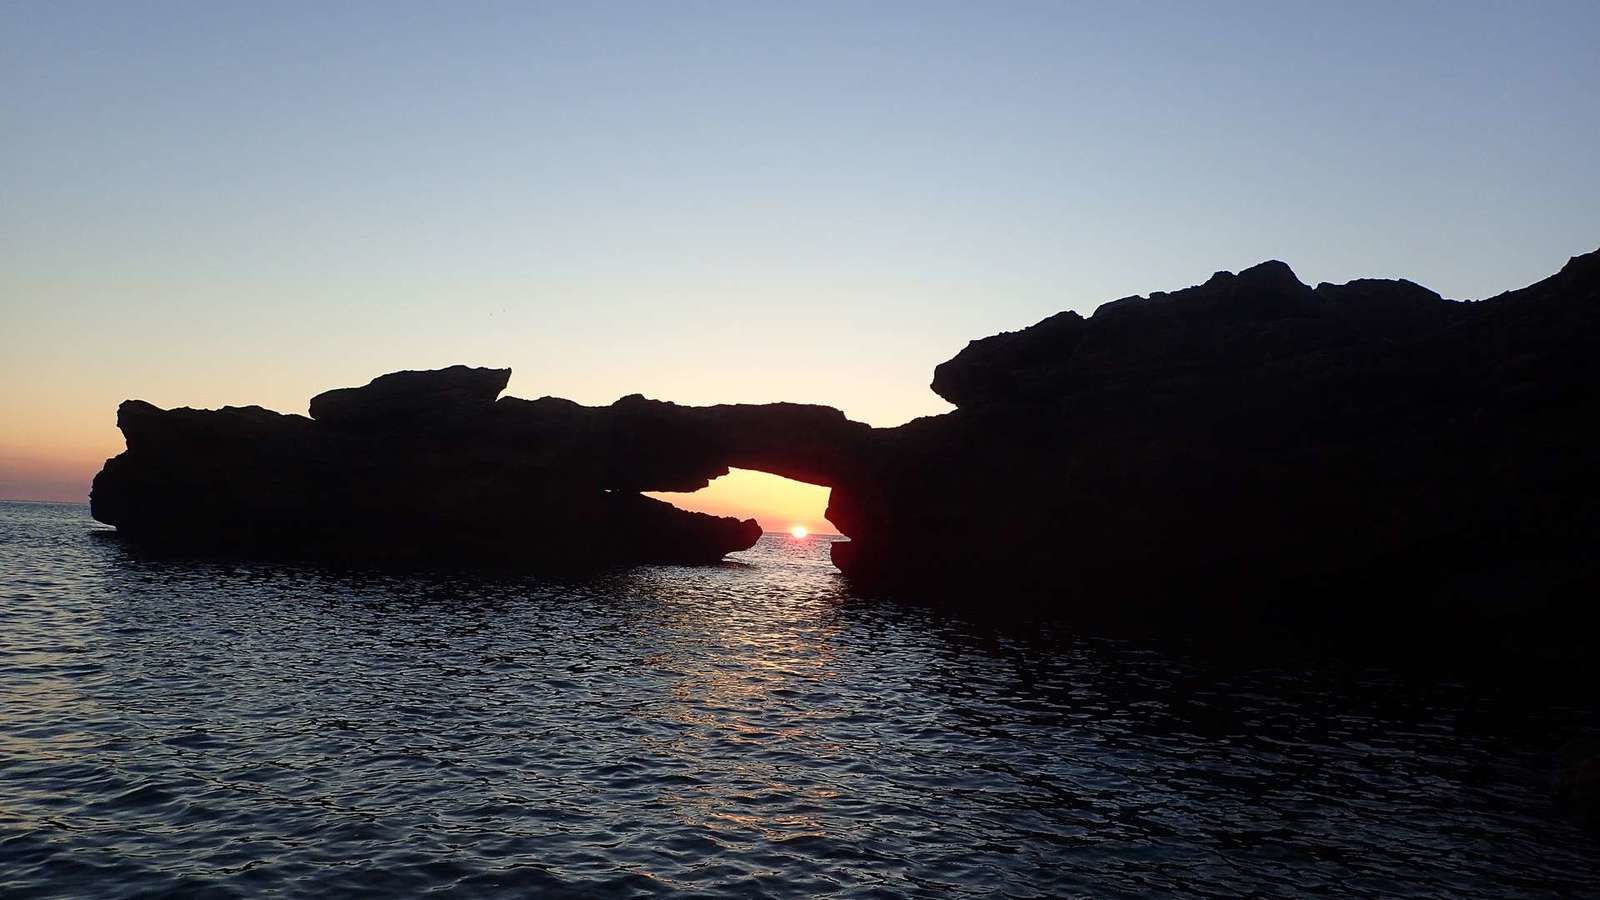 Sardegna 2019, una nuova avventura - Chapitre 2 : à la découverte des merveilles du Golfe d'Orosei (2)